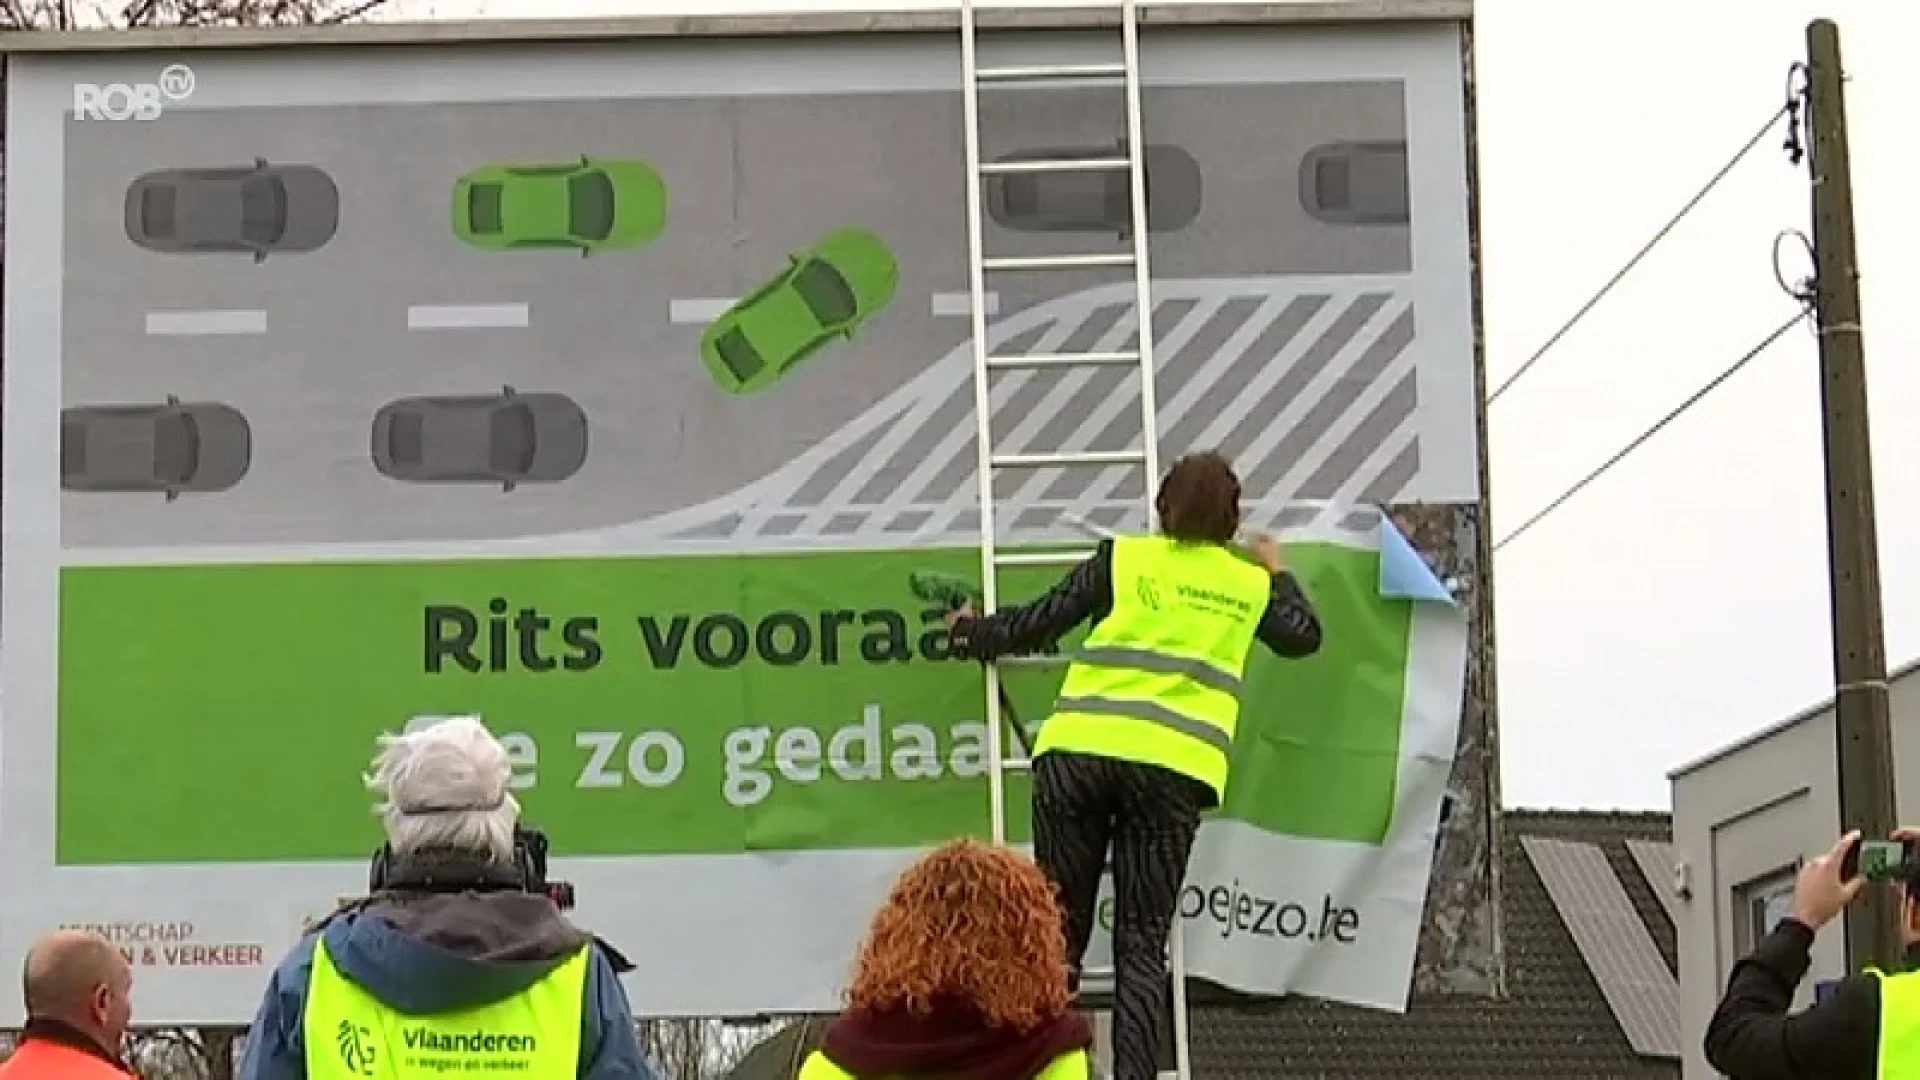 Rits vooraan, file zo gedaan: nieuwe verkeerscampagne gelanceerd in Lubbeek